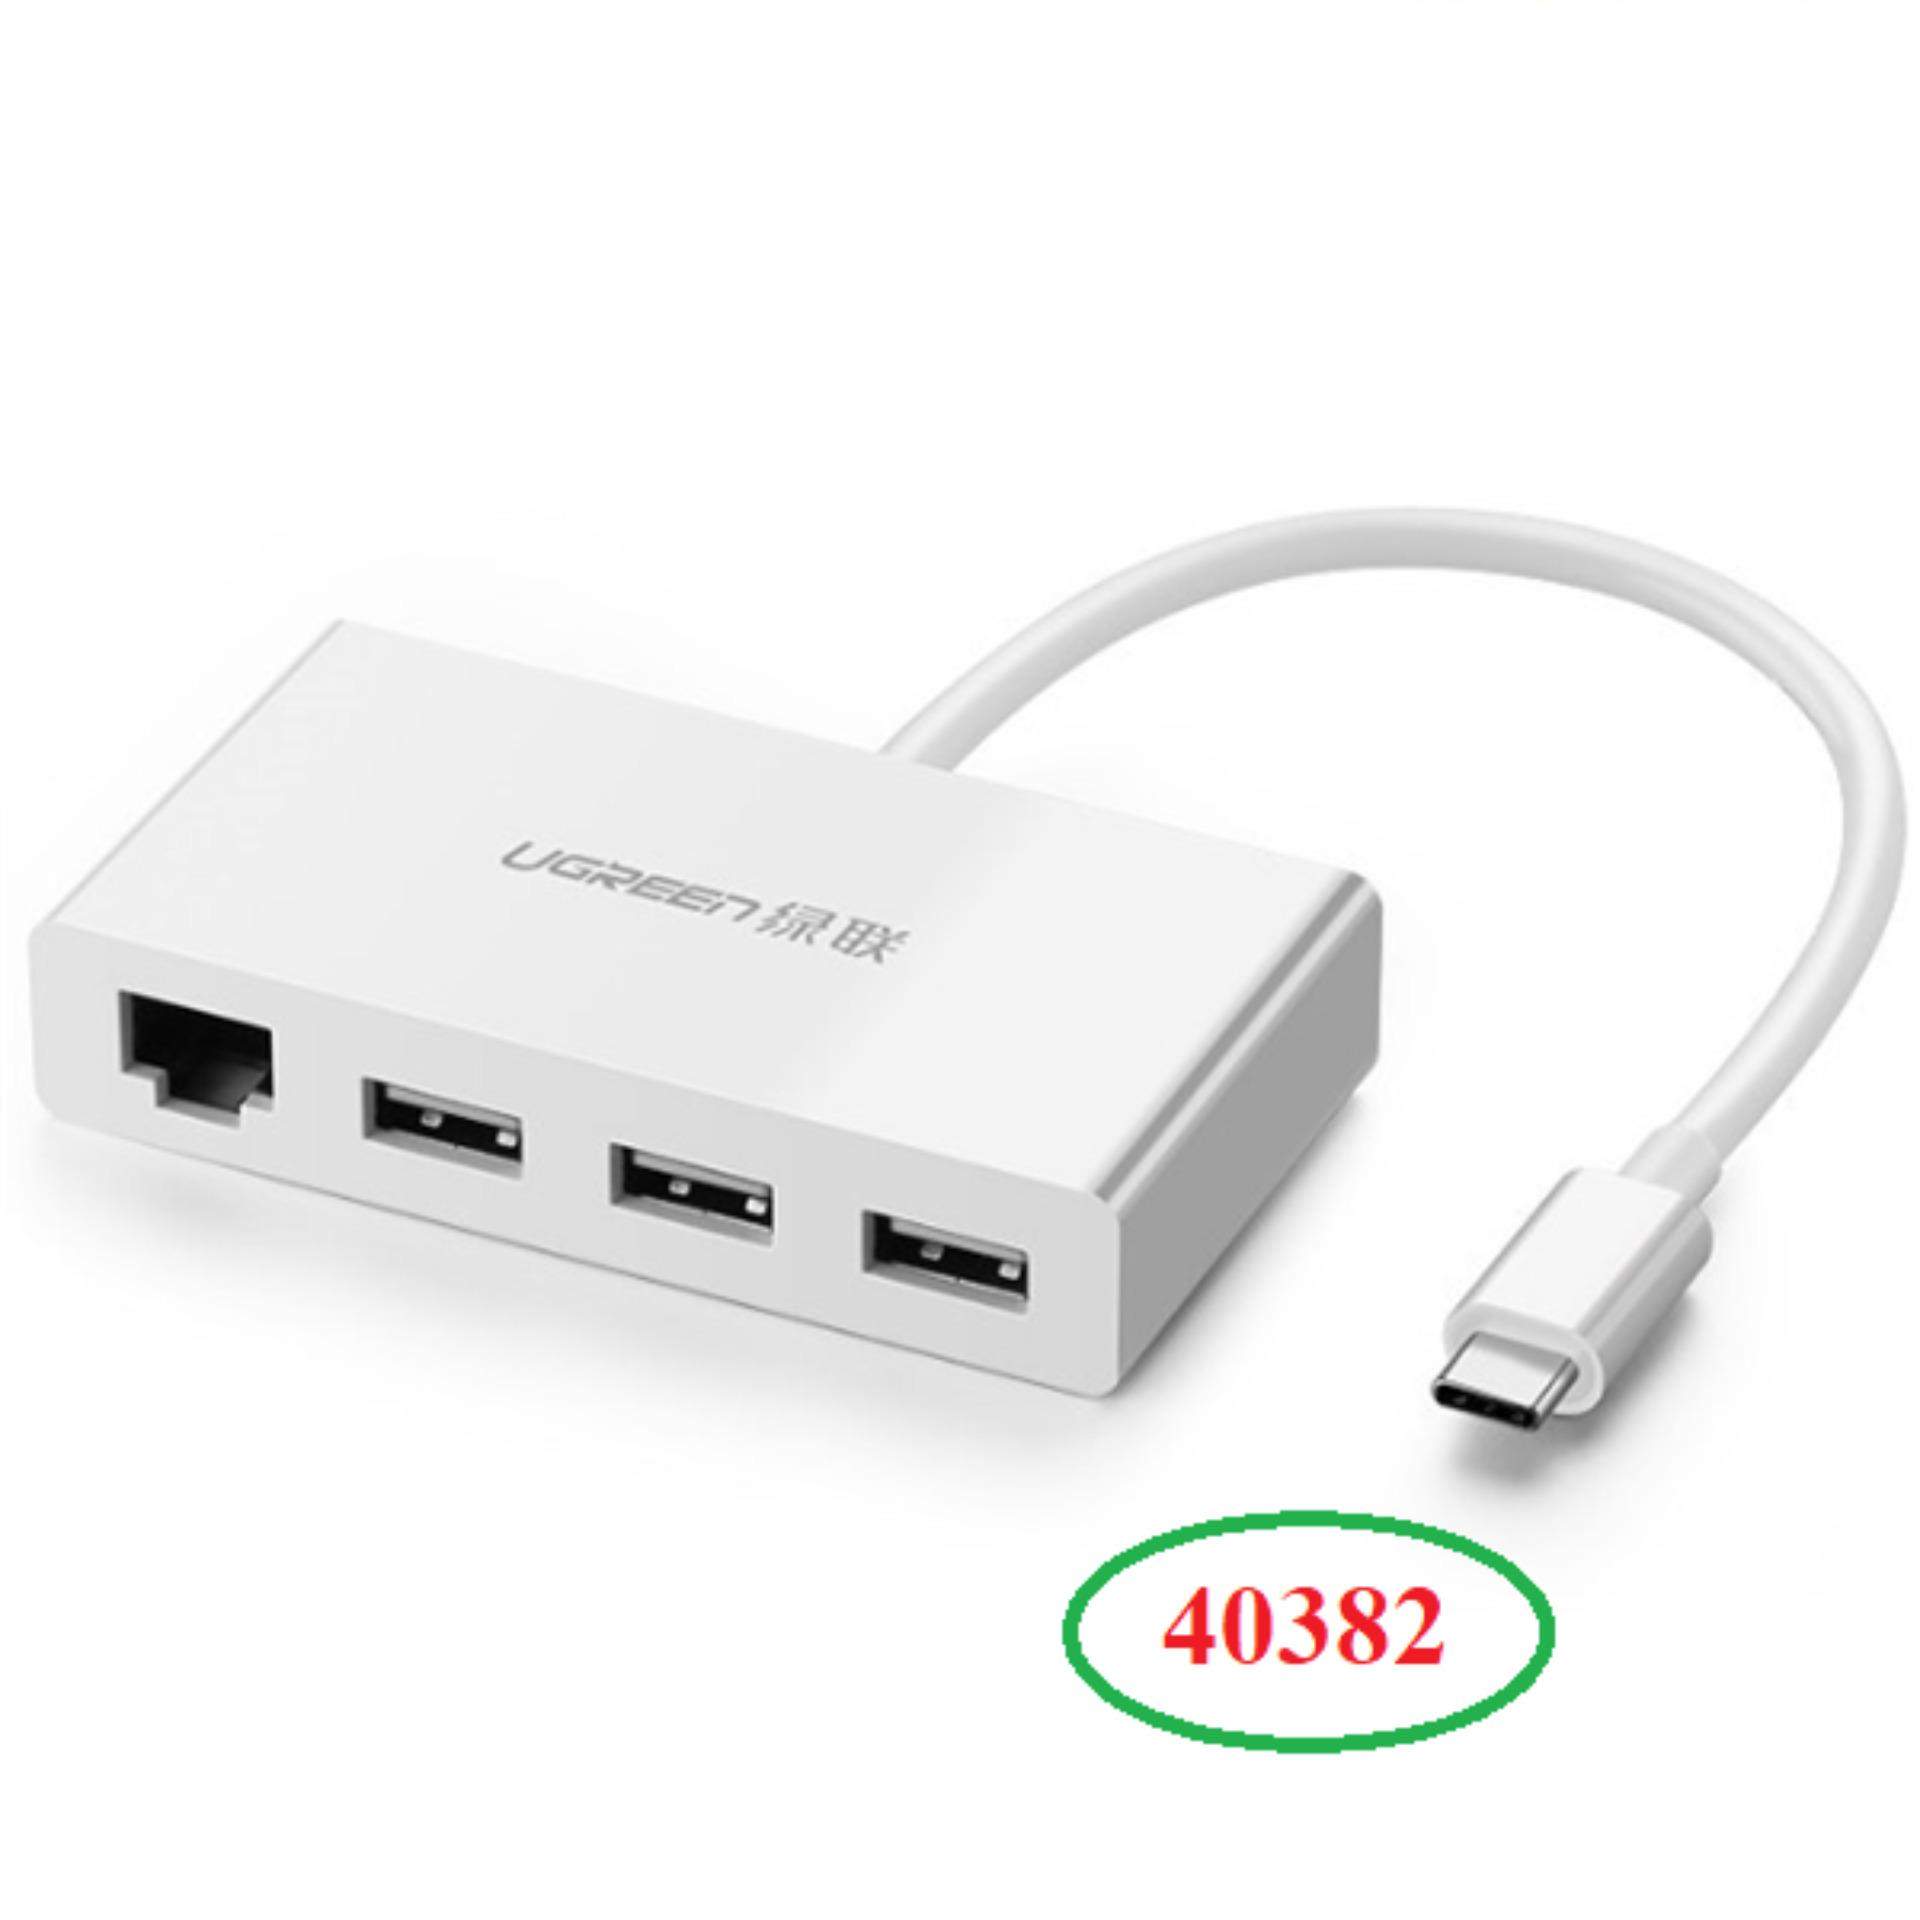 Cáp USB Type C Ugreen 40382 ra 3 cổng USB 3.0 và 1 cổng Lan 10/100Mbps cao cấp